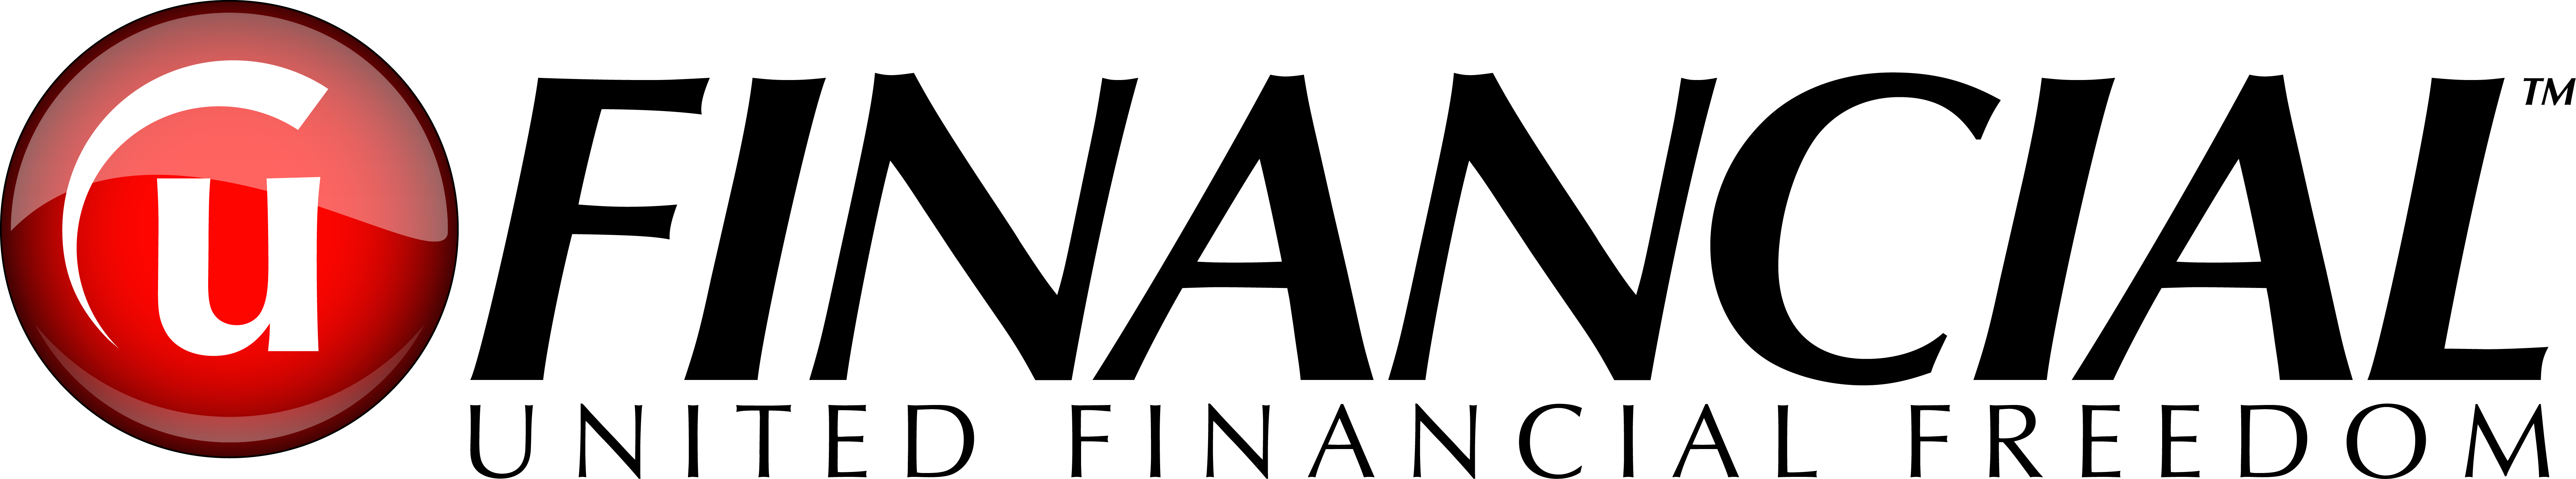 UFinancial-logo